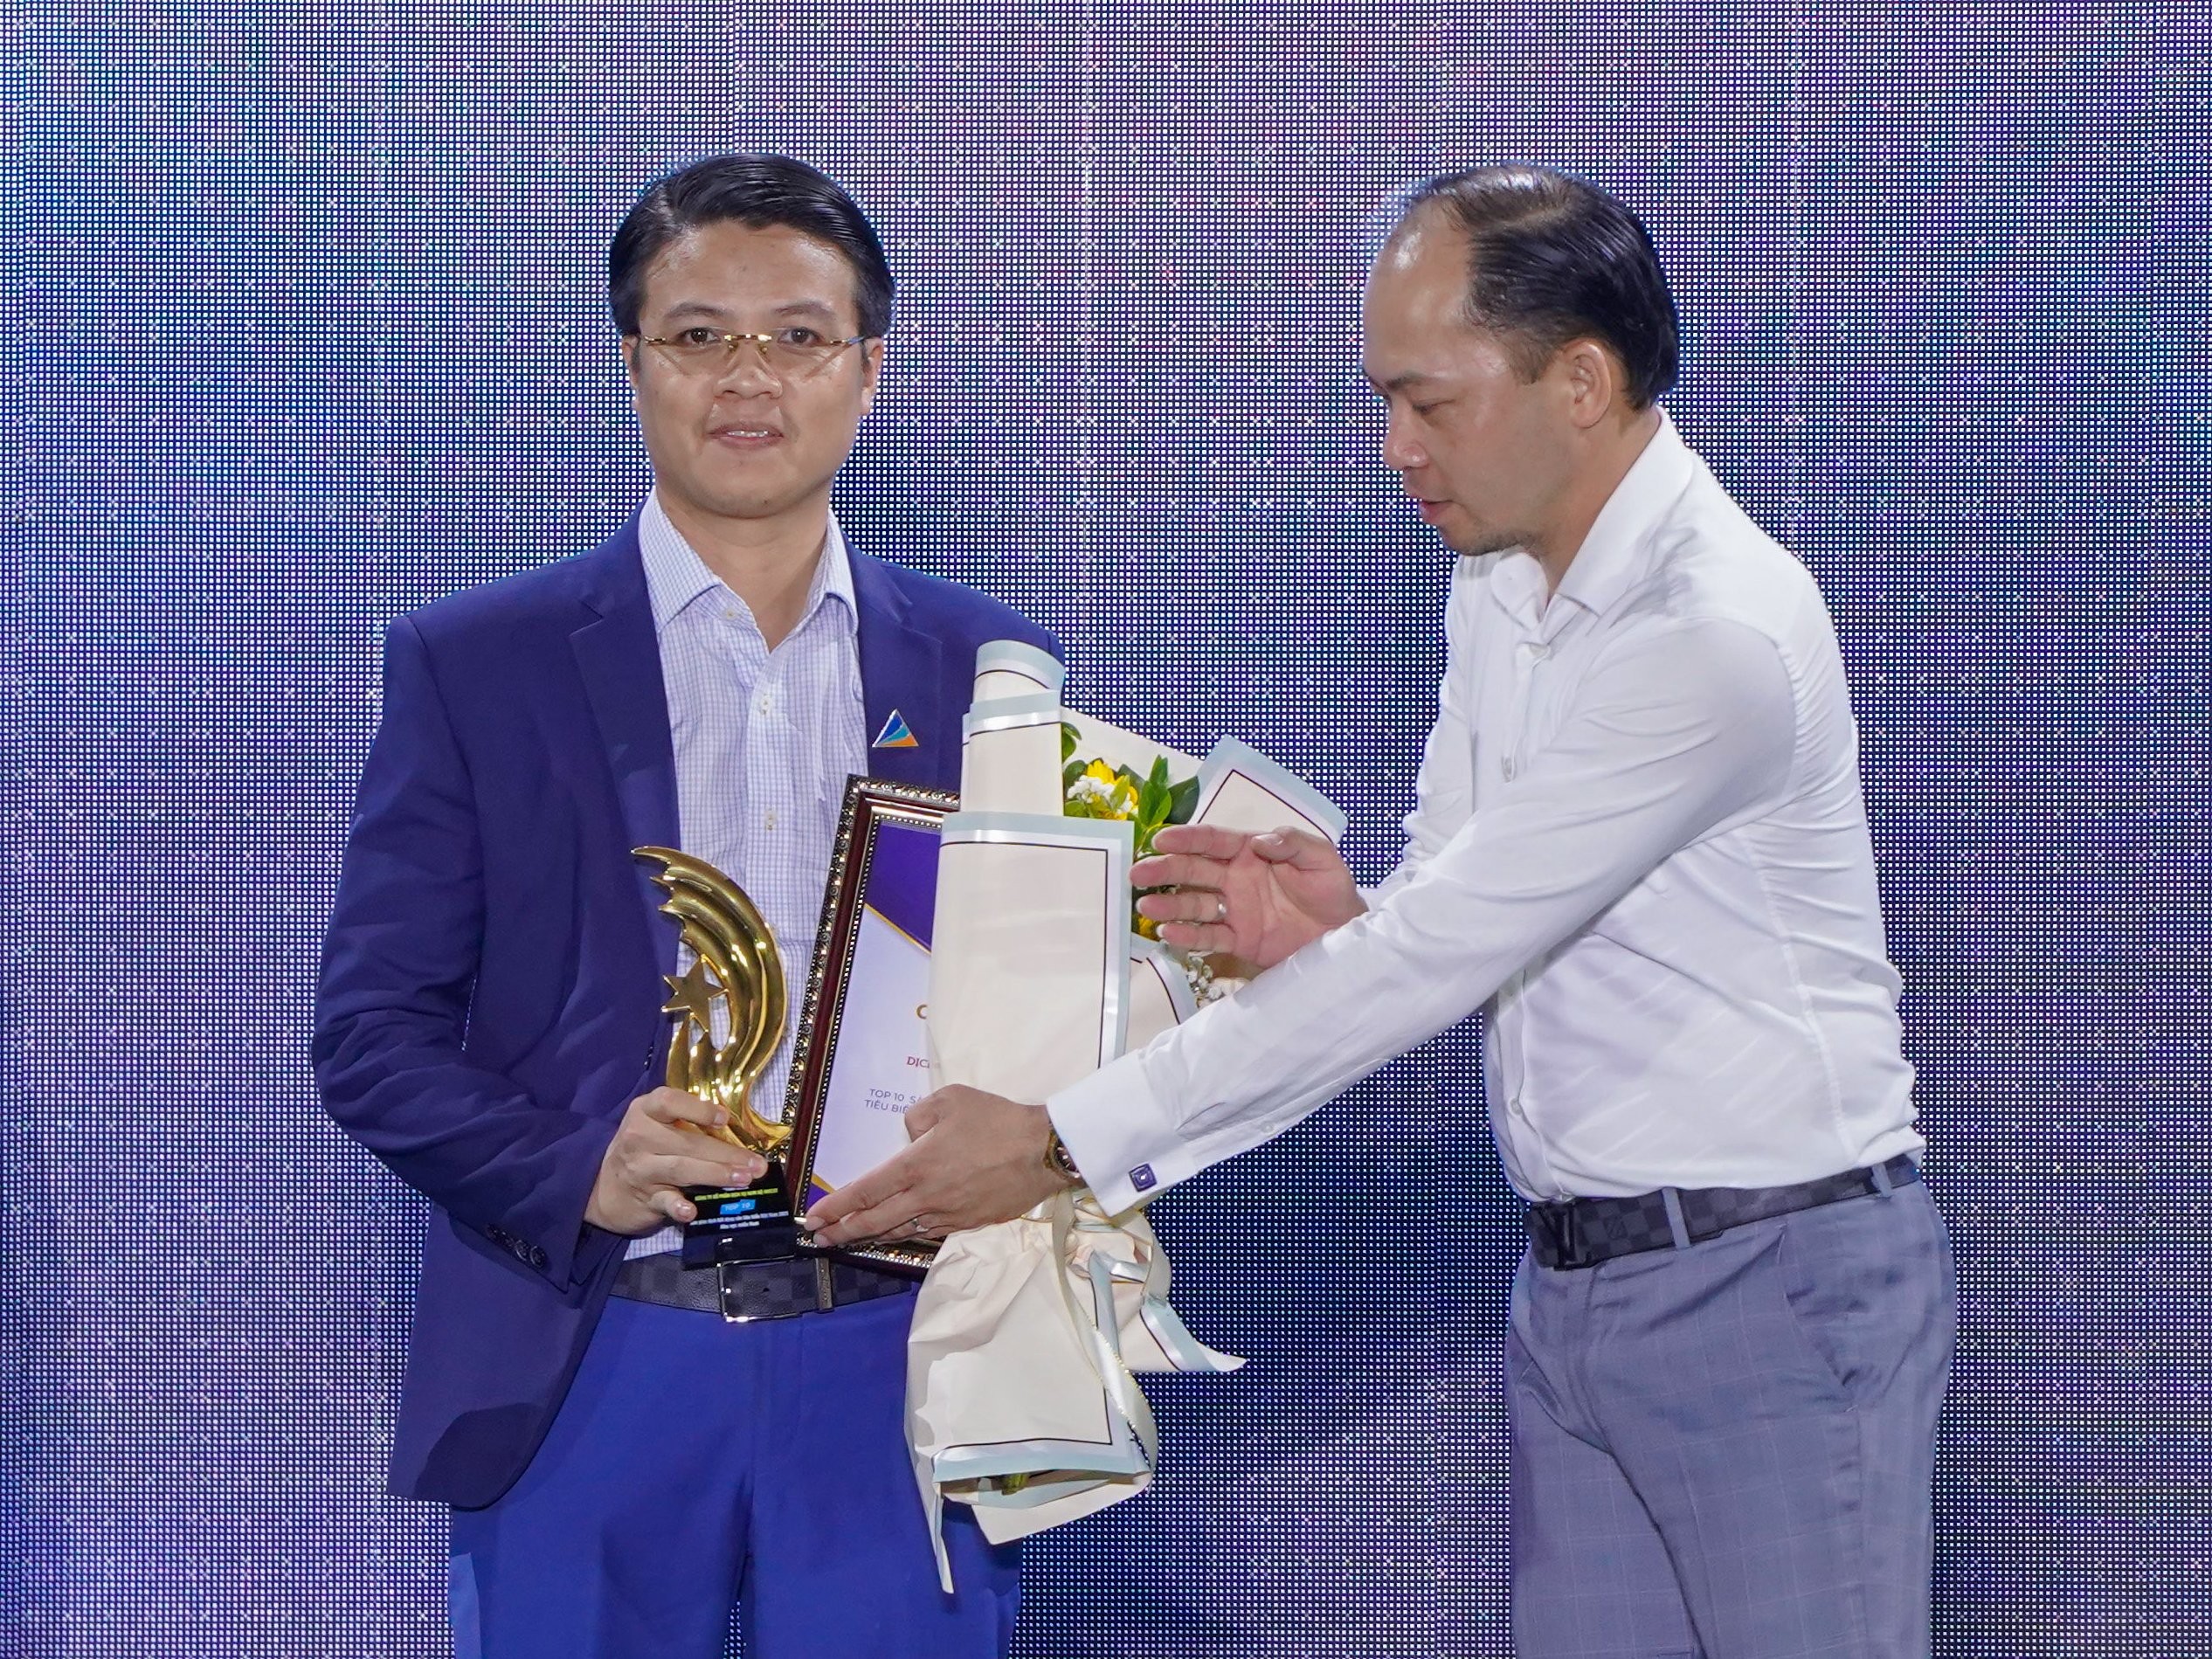 
Ông Hảo trong lần nhận giải thưởng vinh danh nghề nghiệp của Hội Môi giới Bất động sản Việt Nam
